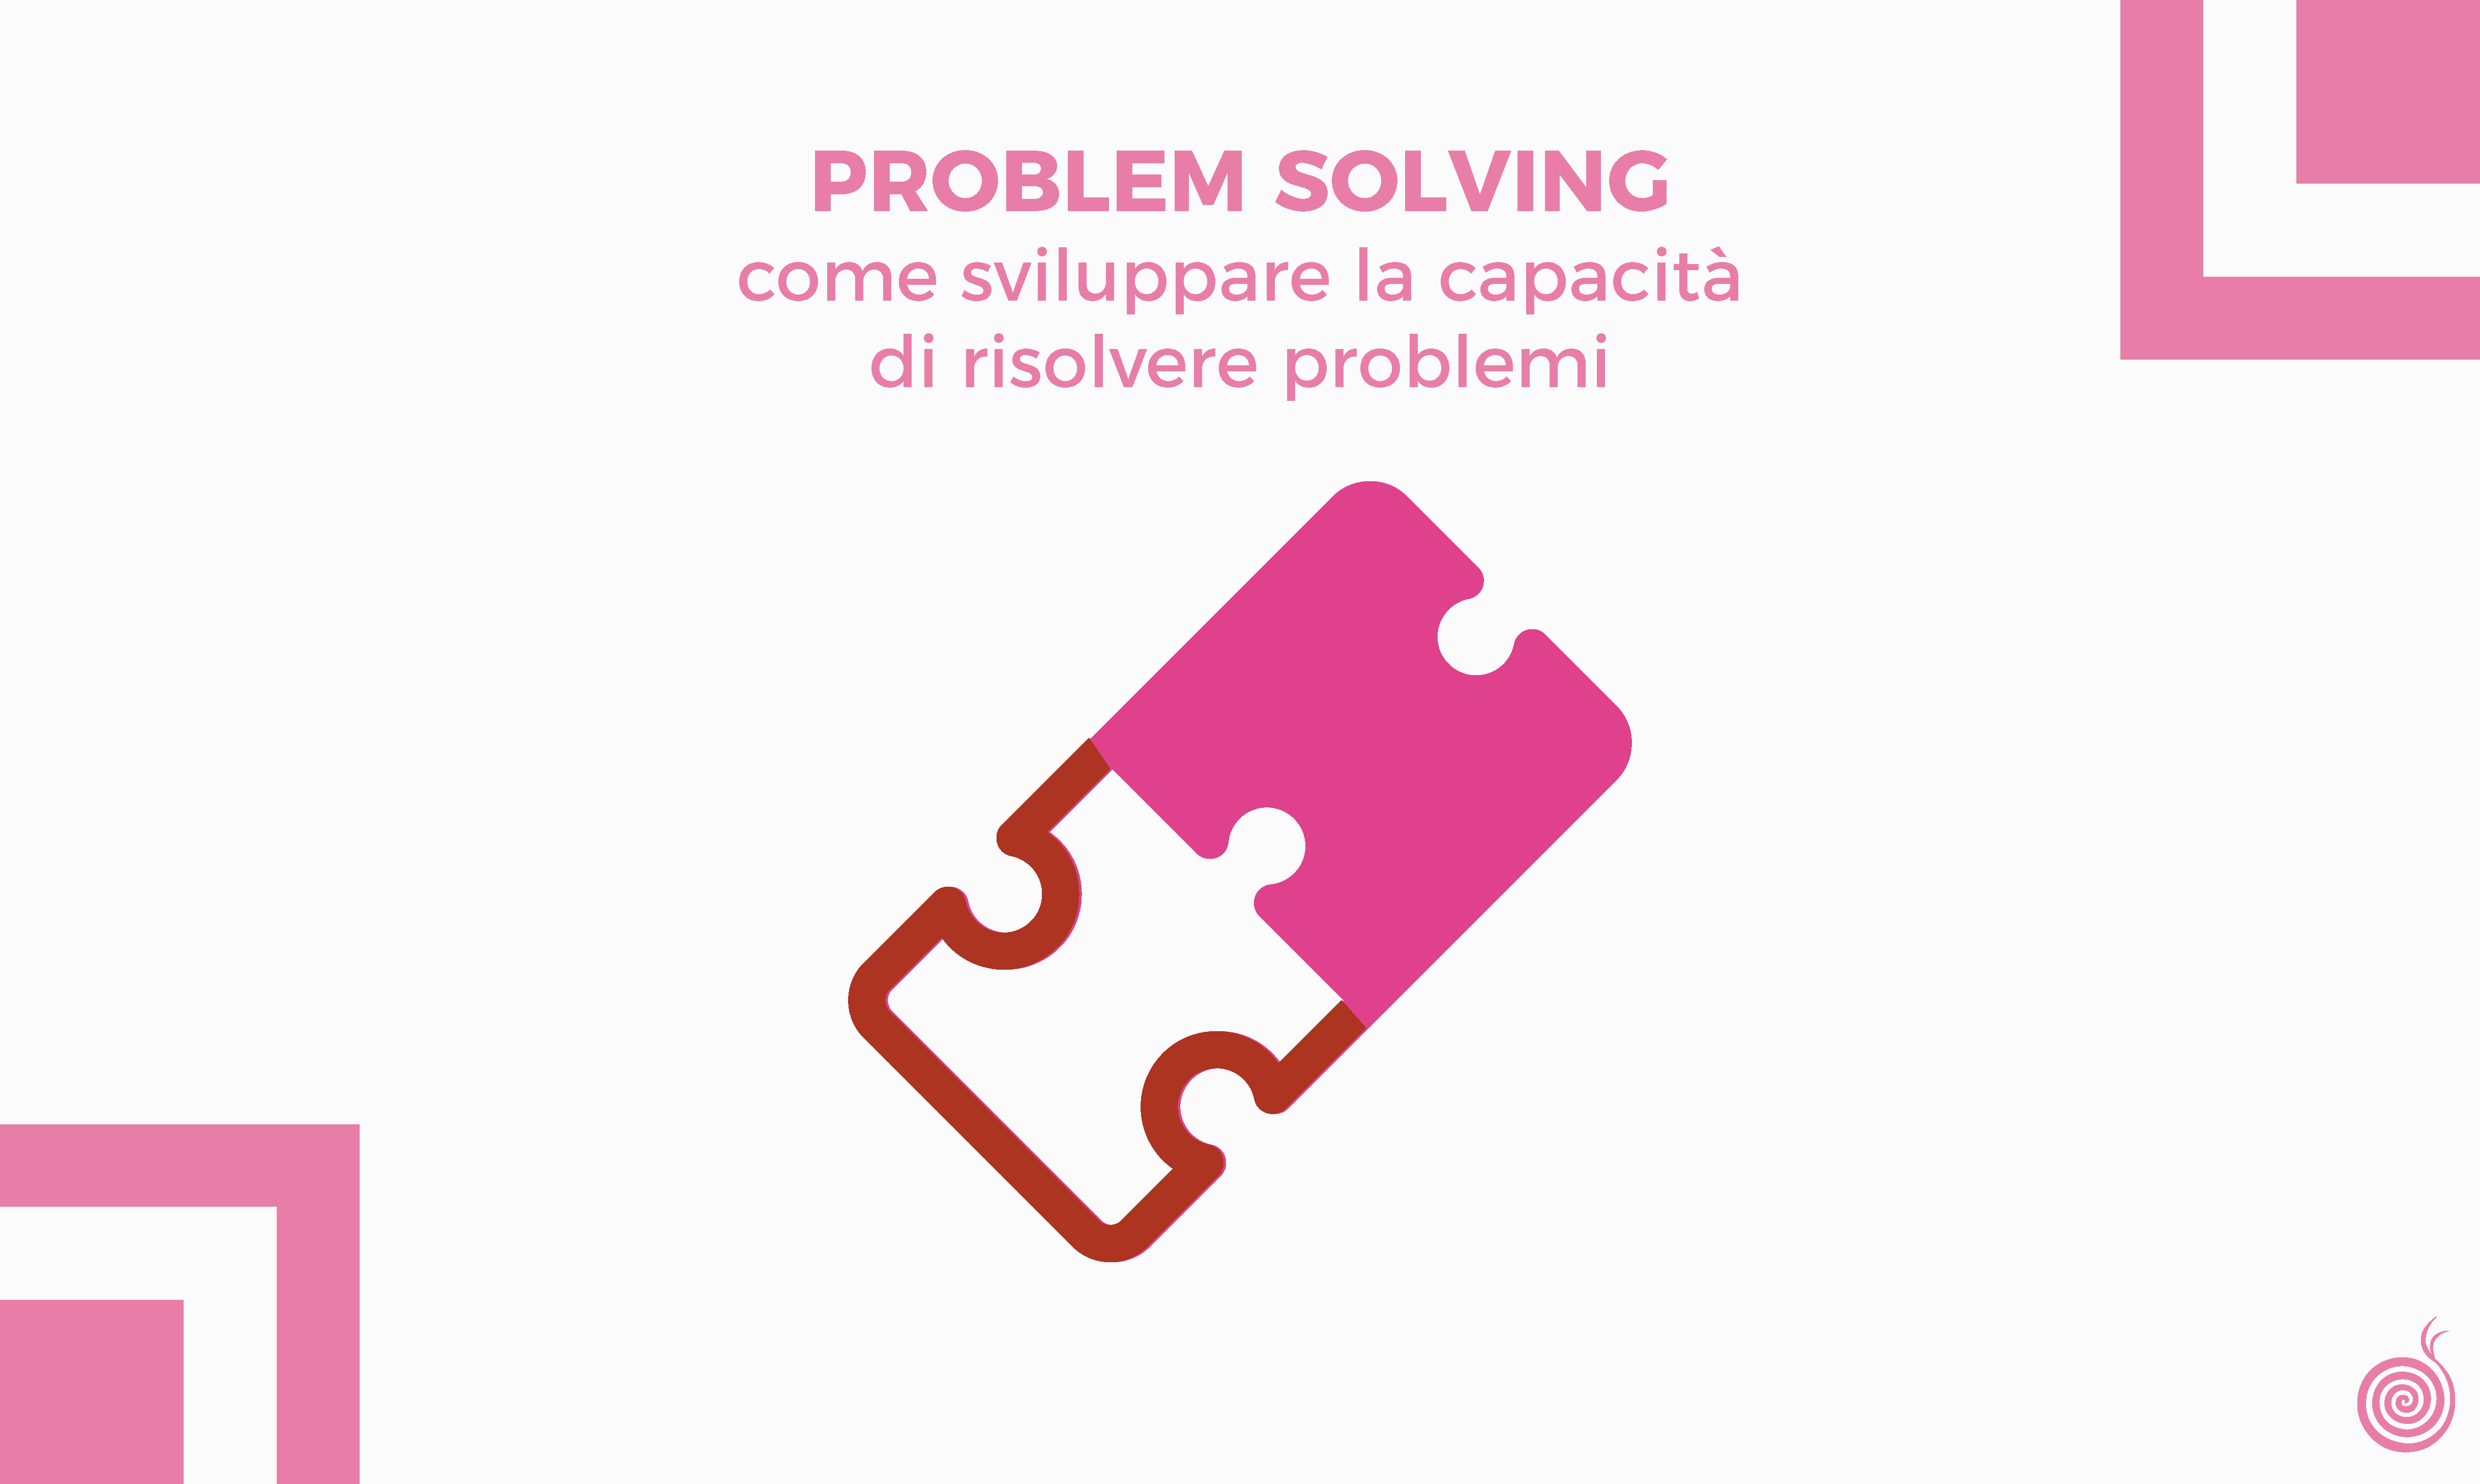 Problem solving: come sviluppare la capacità di risolvere problemi - Beetroot srl